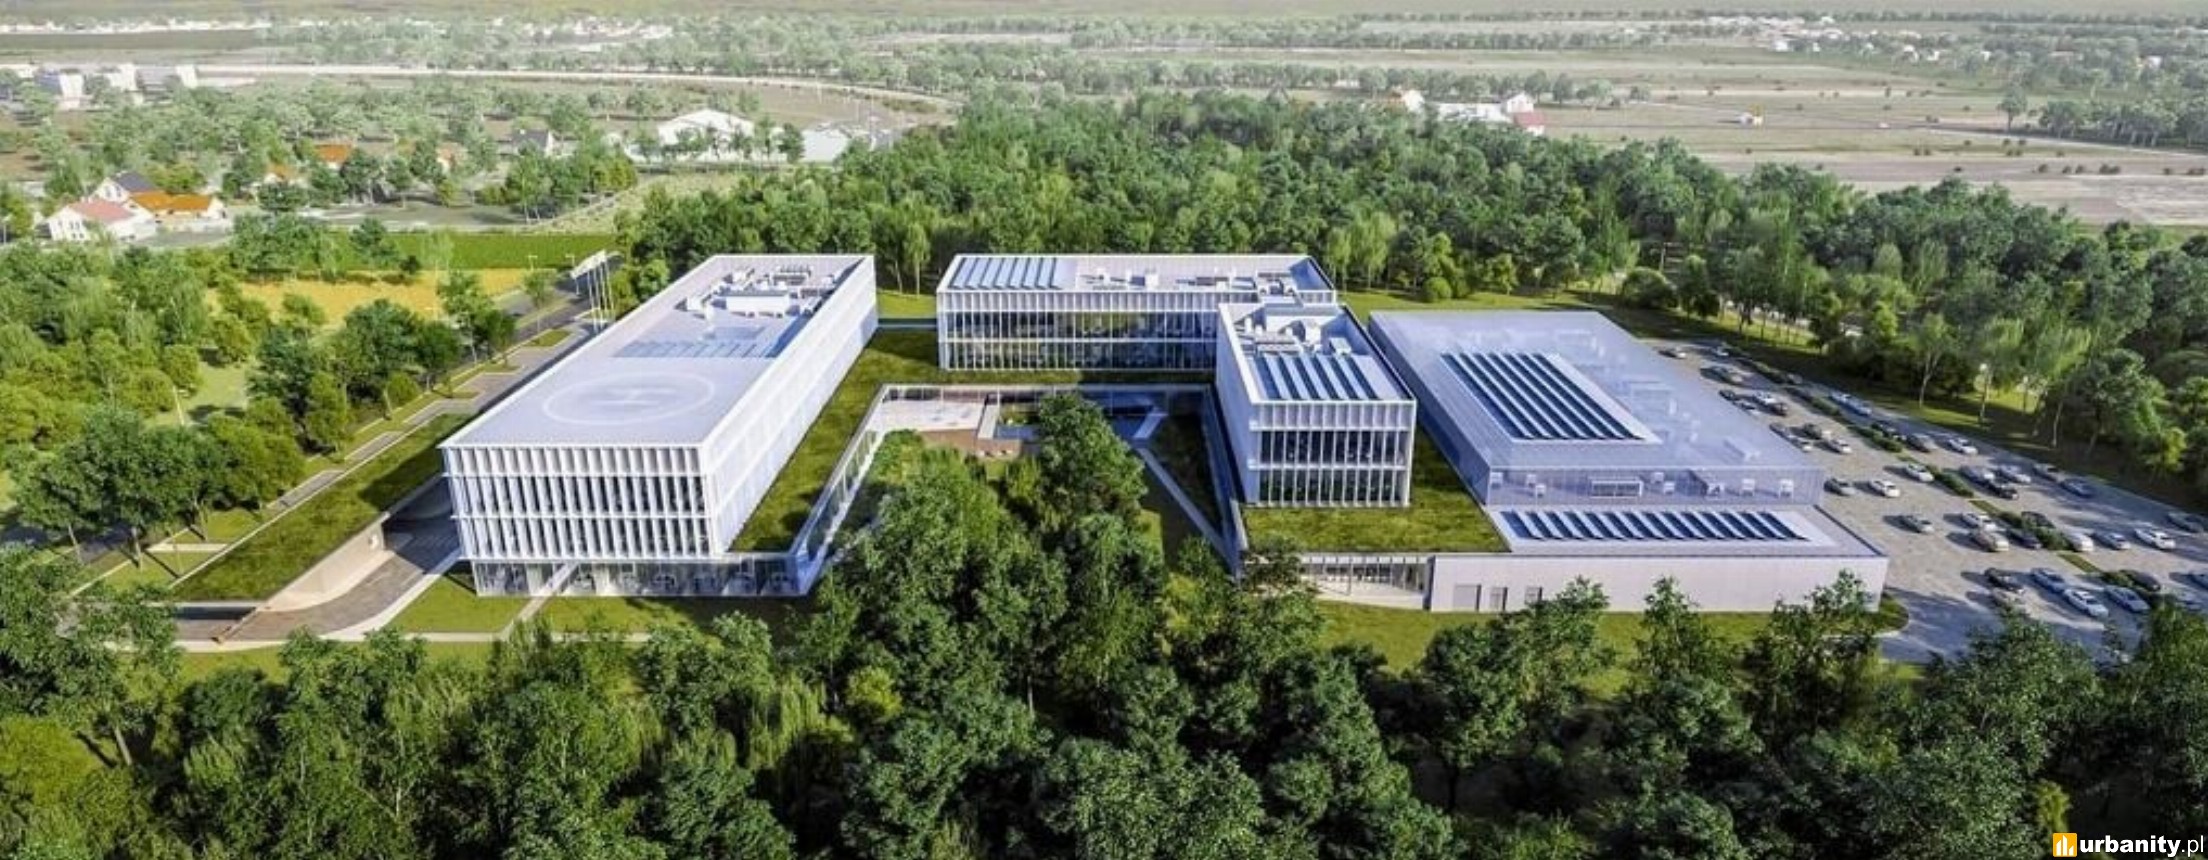 Nowa siedziba PSE w Radomiu za prawie 600 mln zł. Ruszyła budowa nowoczesnego kompleksu